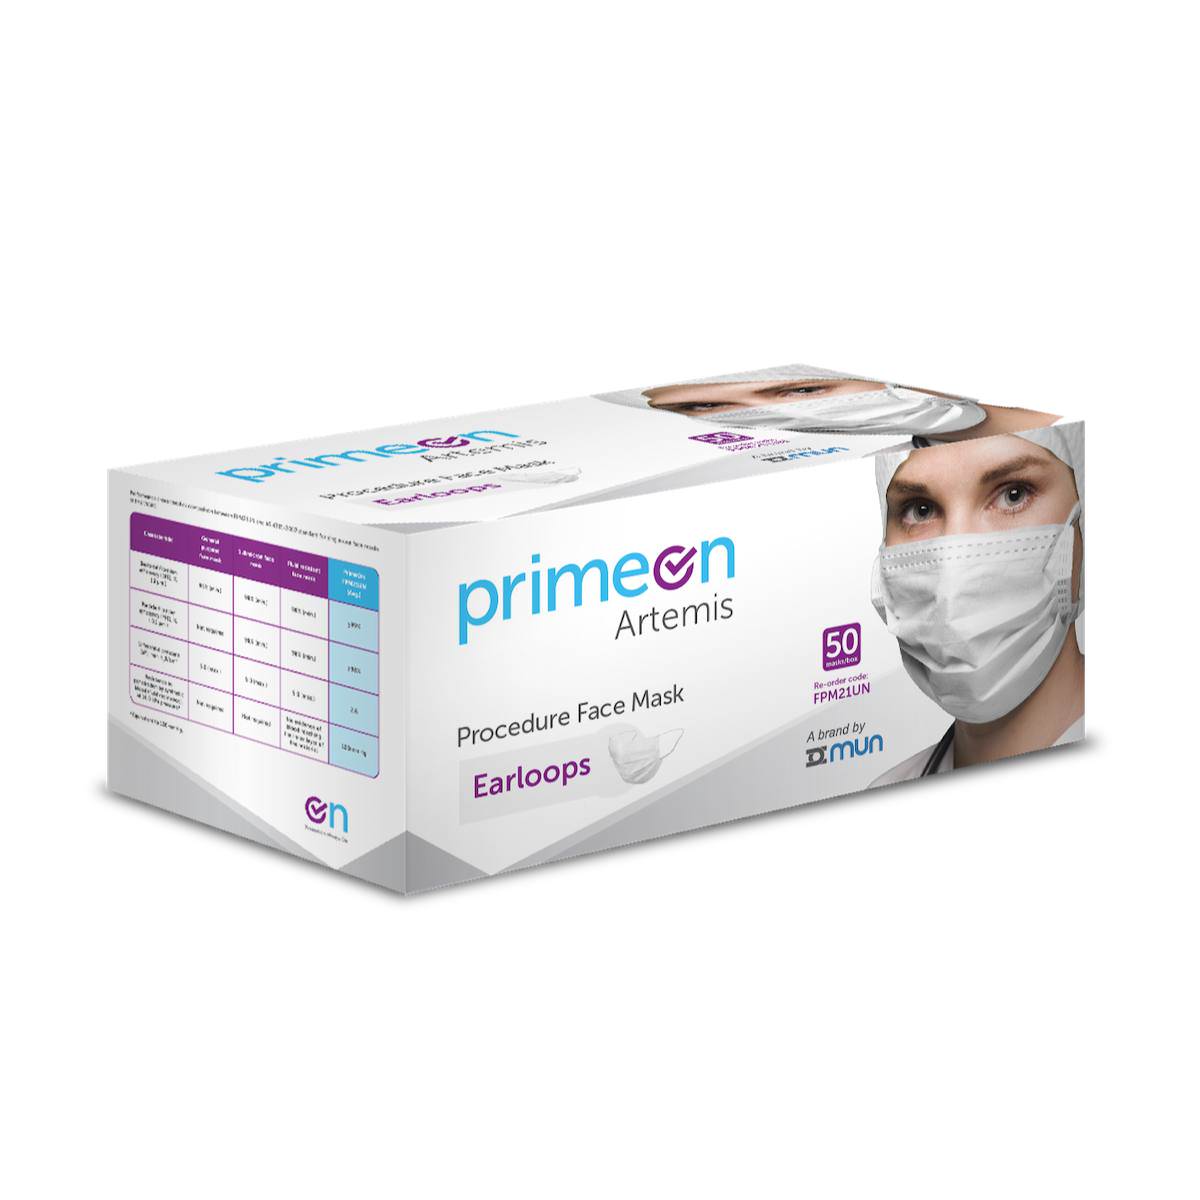 PrimeOn ASTM Artemis Level 2 Procedure Face Mask FPM21UN (Carton of 6 Boxes)